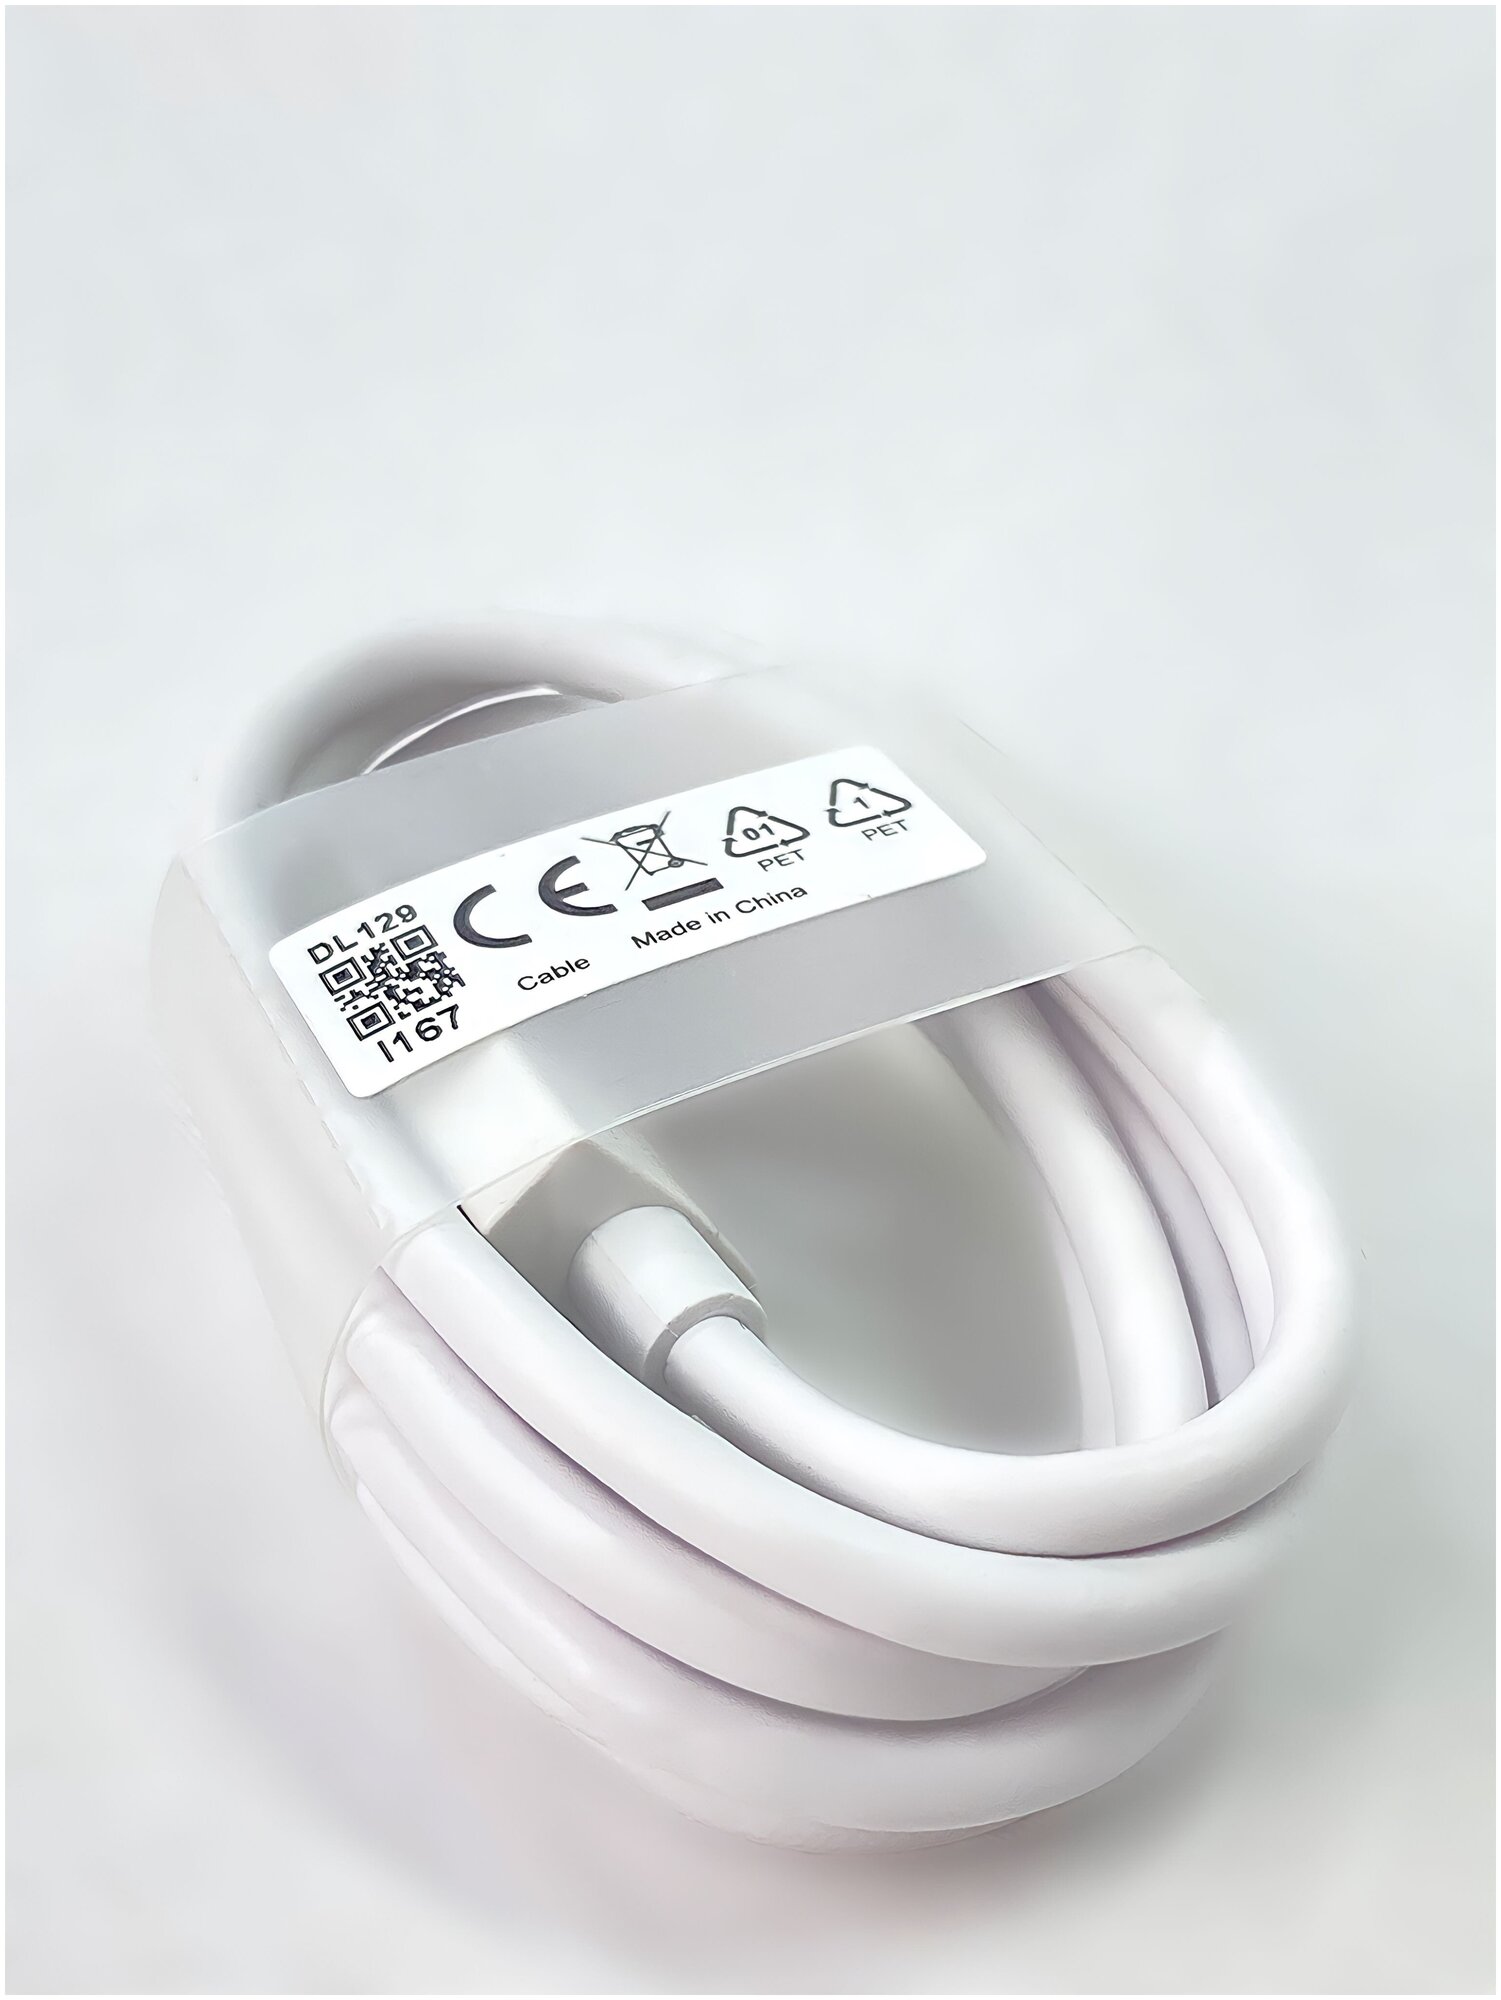 Кабель USB Type-C 5A Oppo (VOOC) Белый